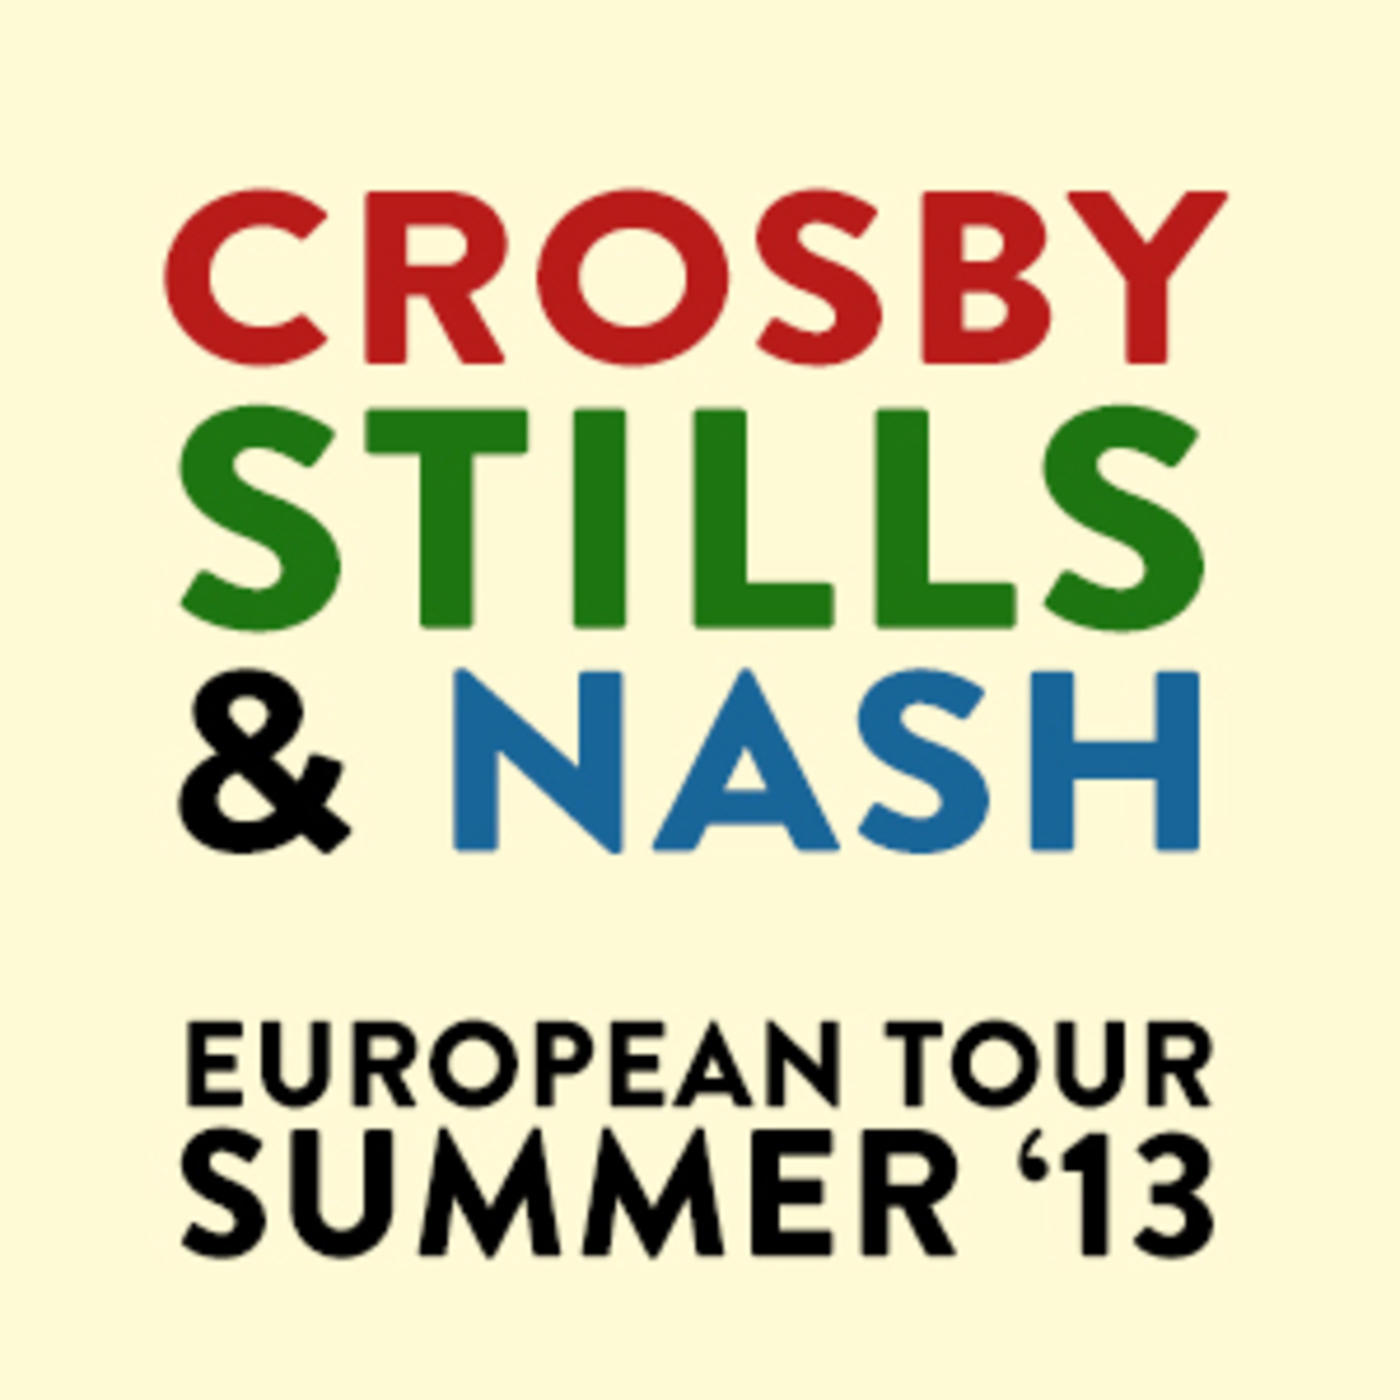 Crosby, Stills & Nash - European Tour Summer '13